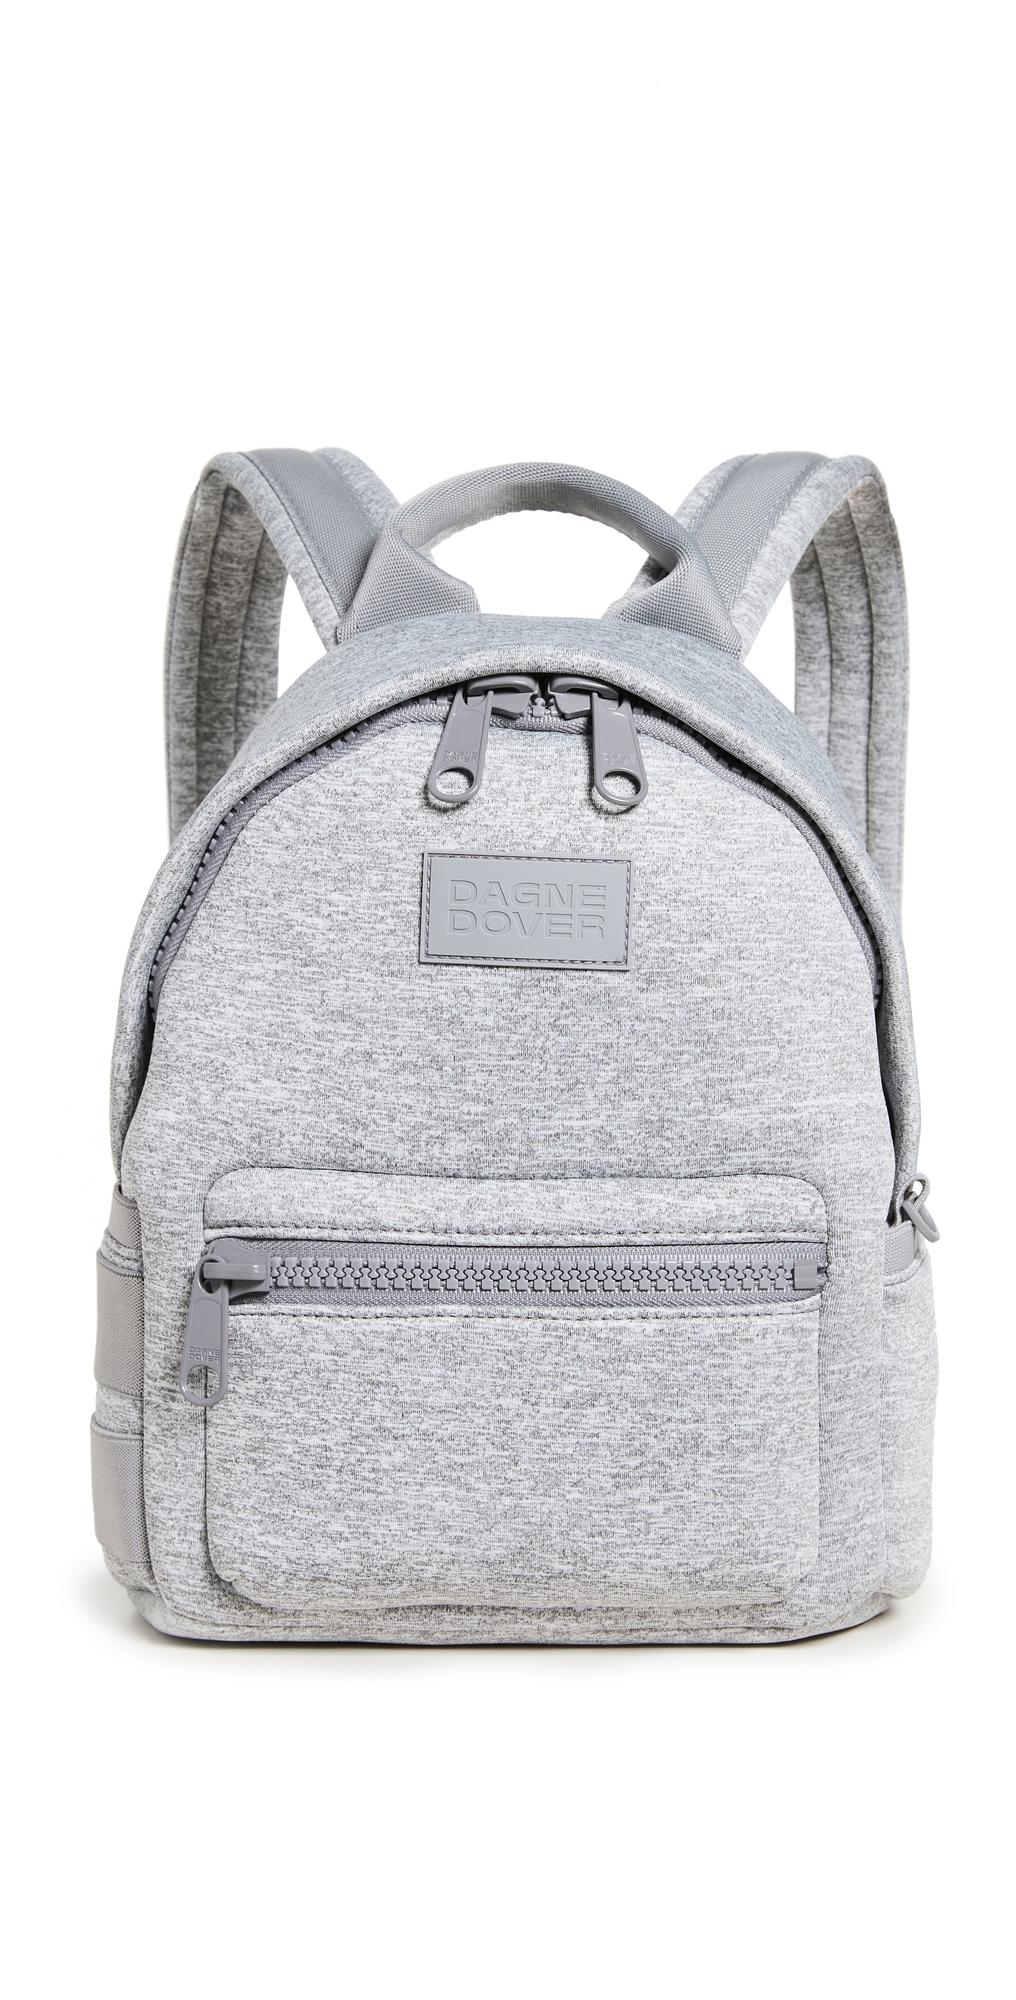 Dagne Dover Small Dakota Backpack in Gray | Lyst